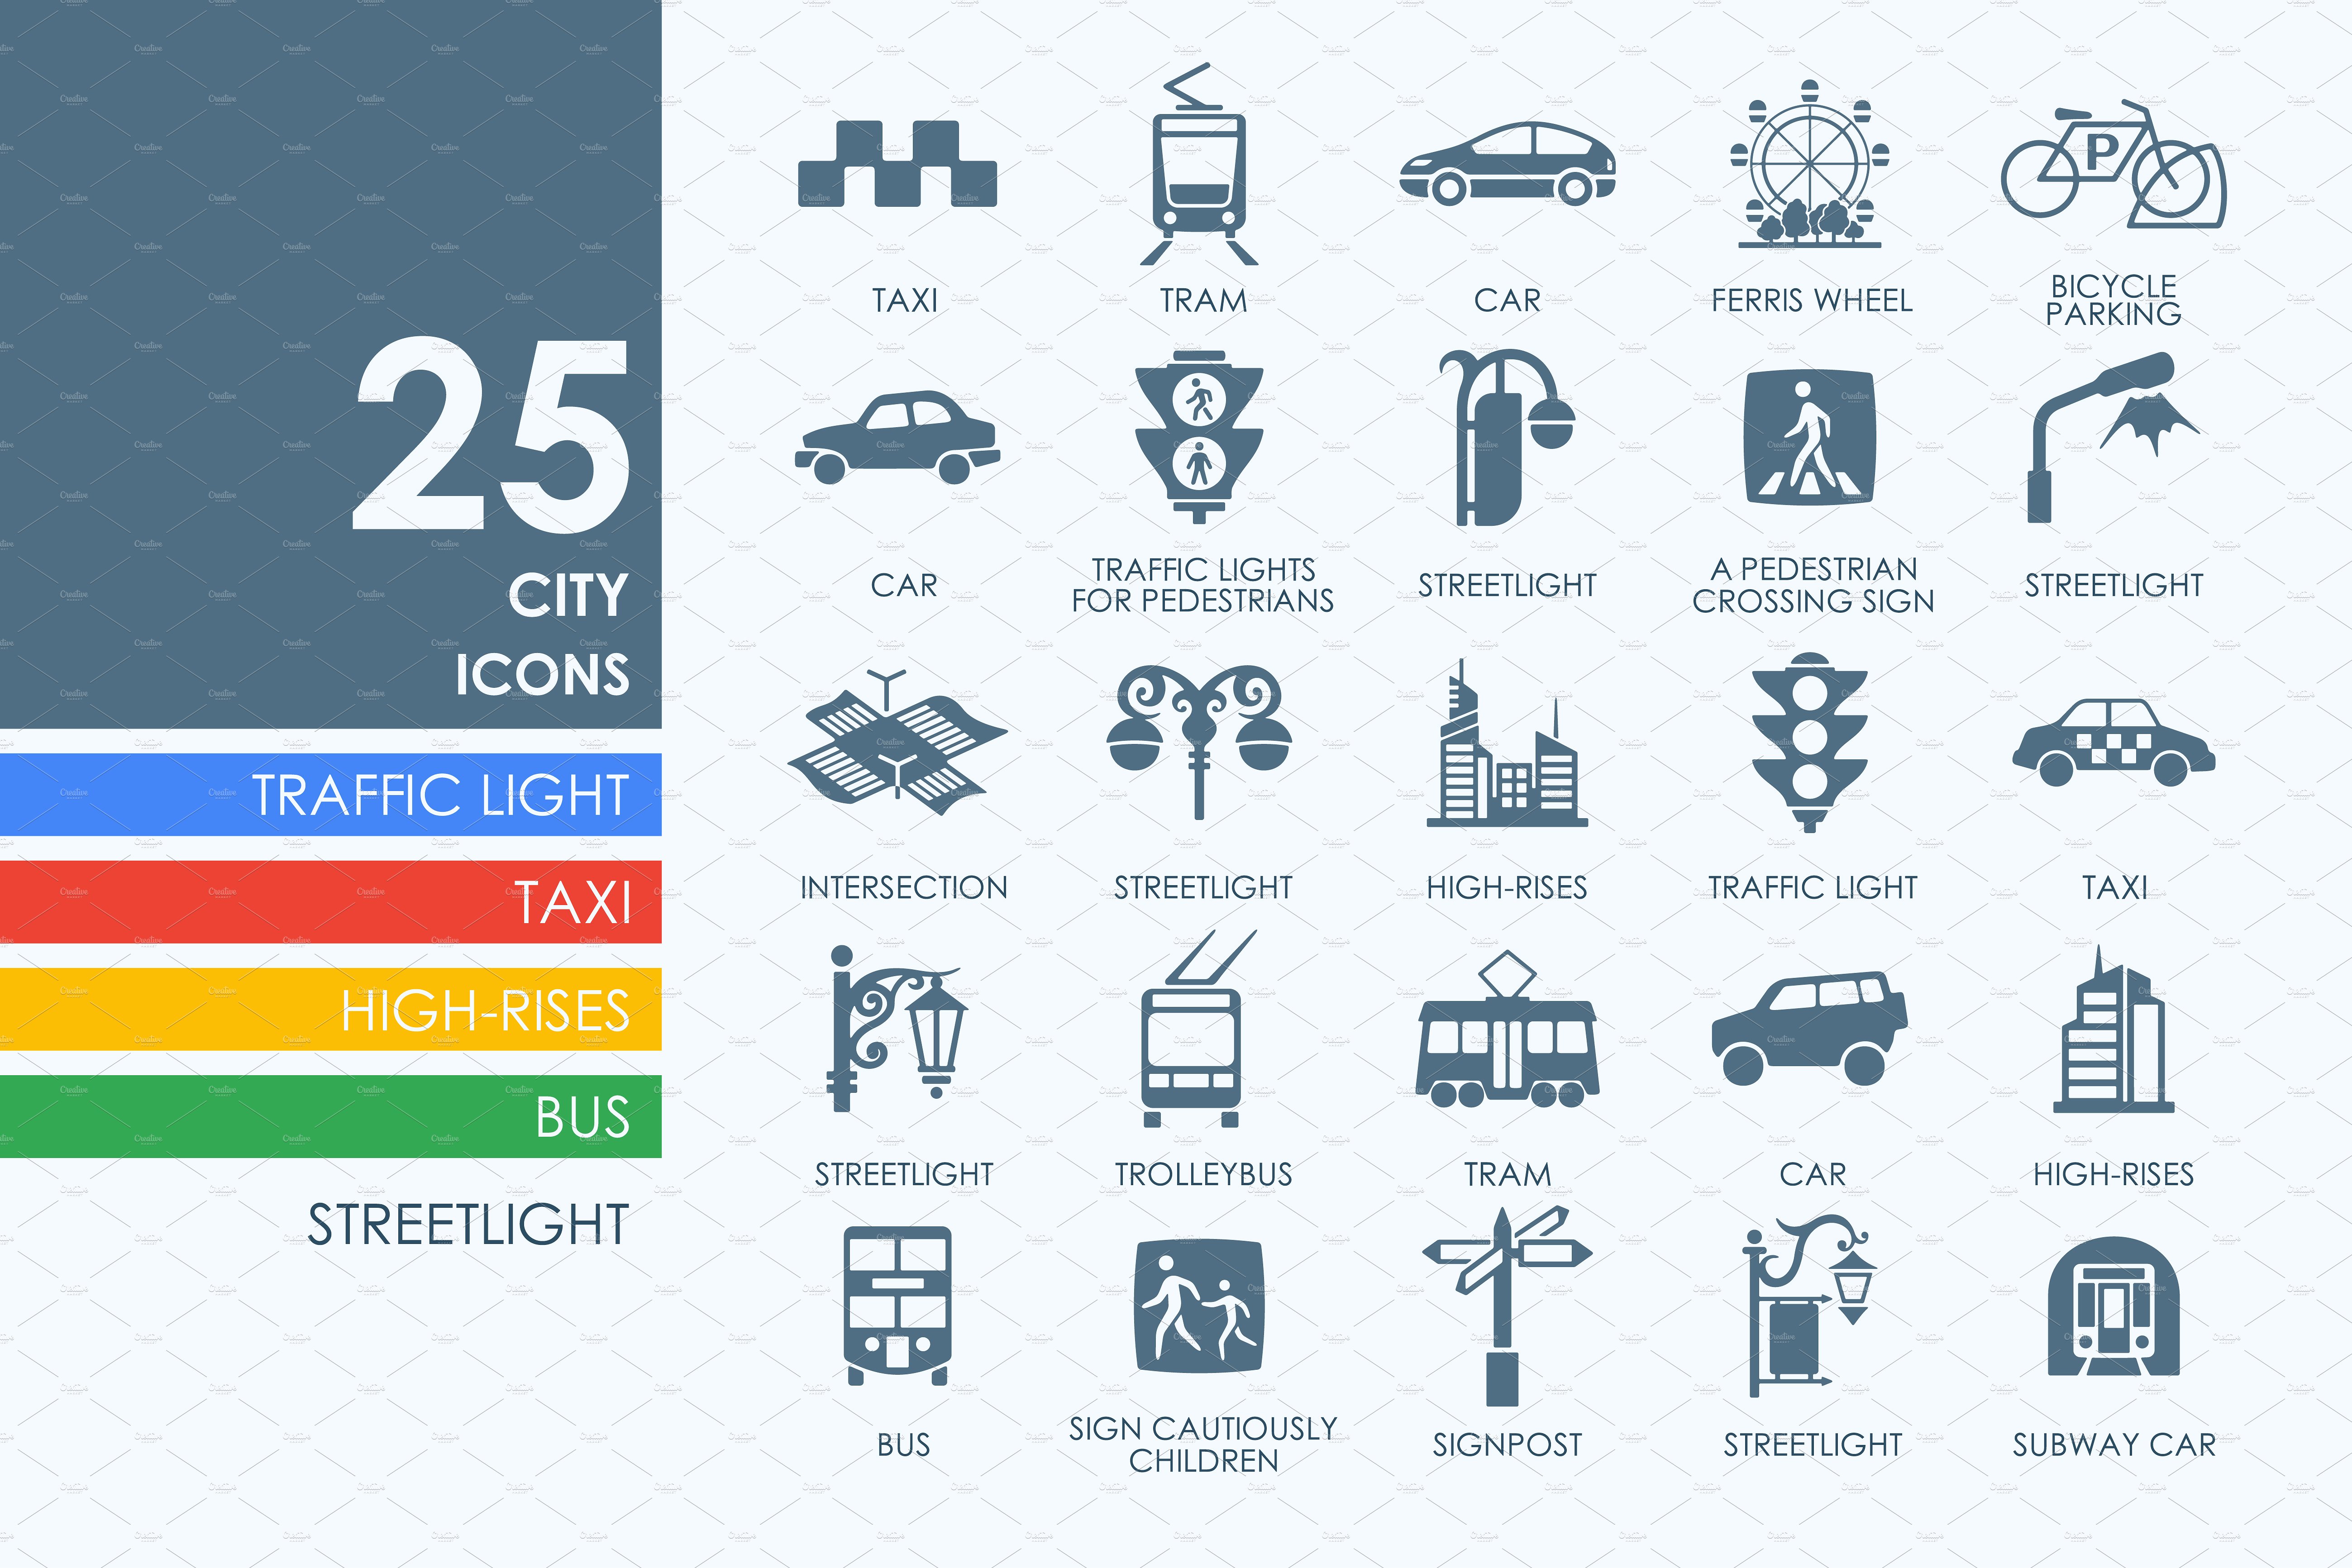 2.5城市图标 25 City icons #91251